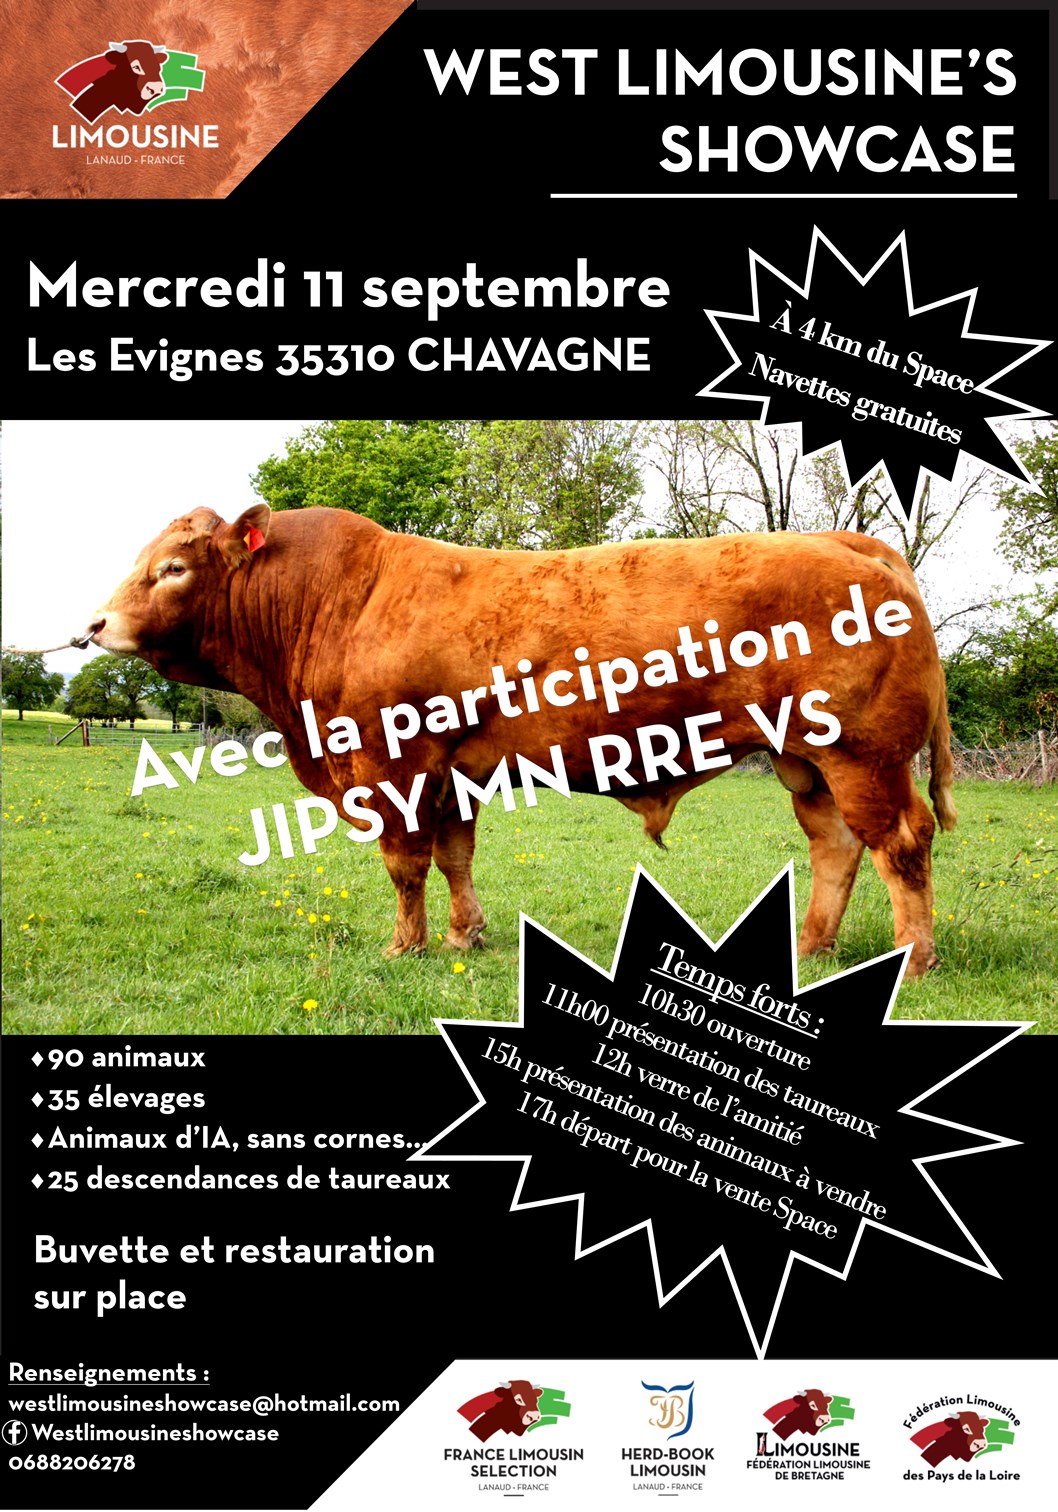 Loire-Atlantique - Trois élevages du département au West limousine's showcase le 11 septembre prochain